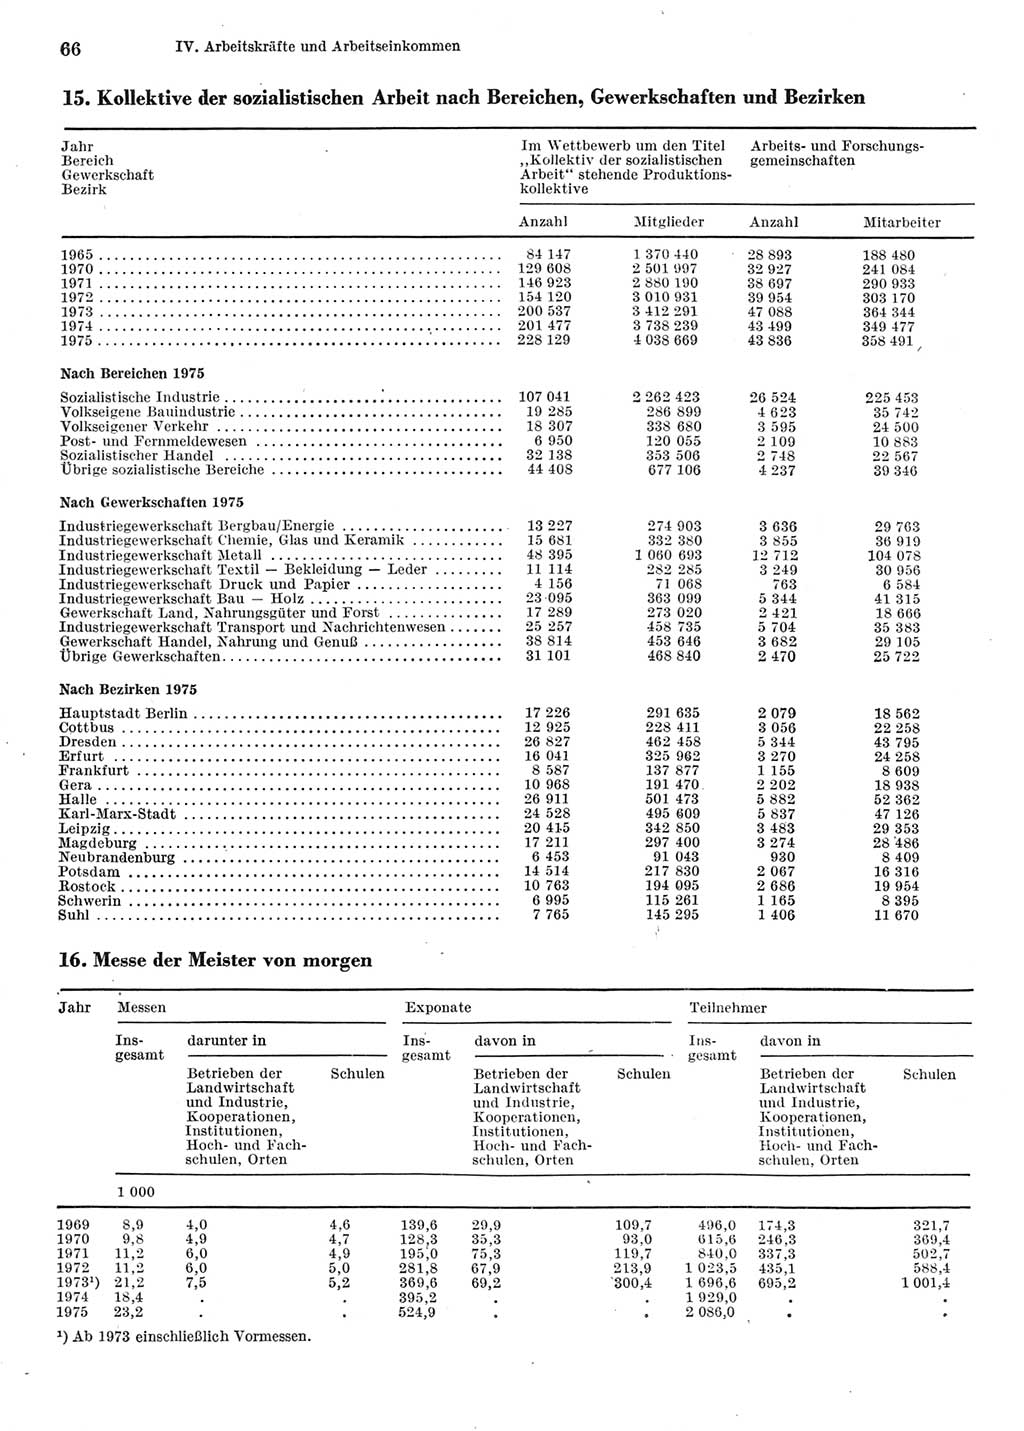 Statistisches Jahrbuch der Deutschen Demokratischen Republik (DDR) 1976, Seite 66 (Stat. Jb. DDR 1976, S. 66)